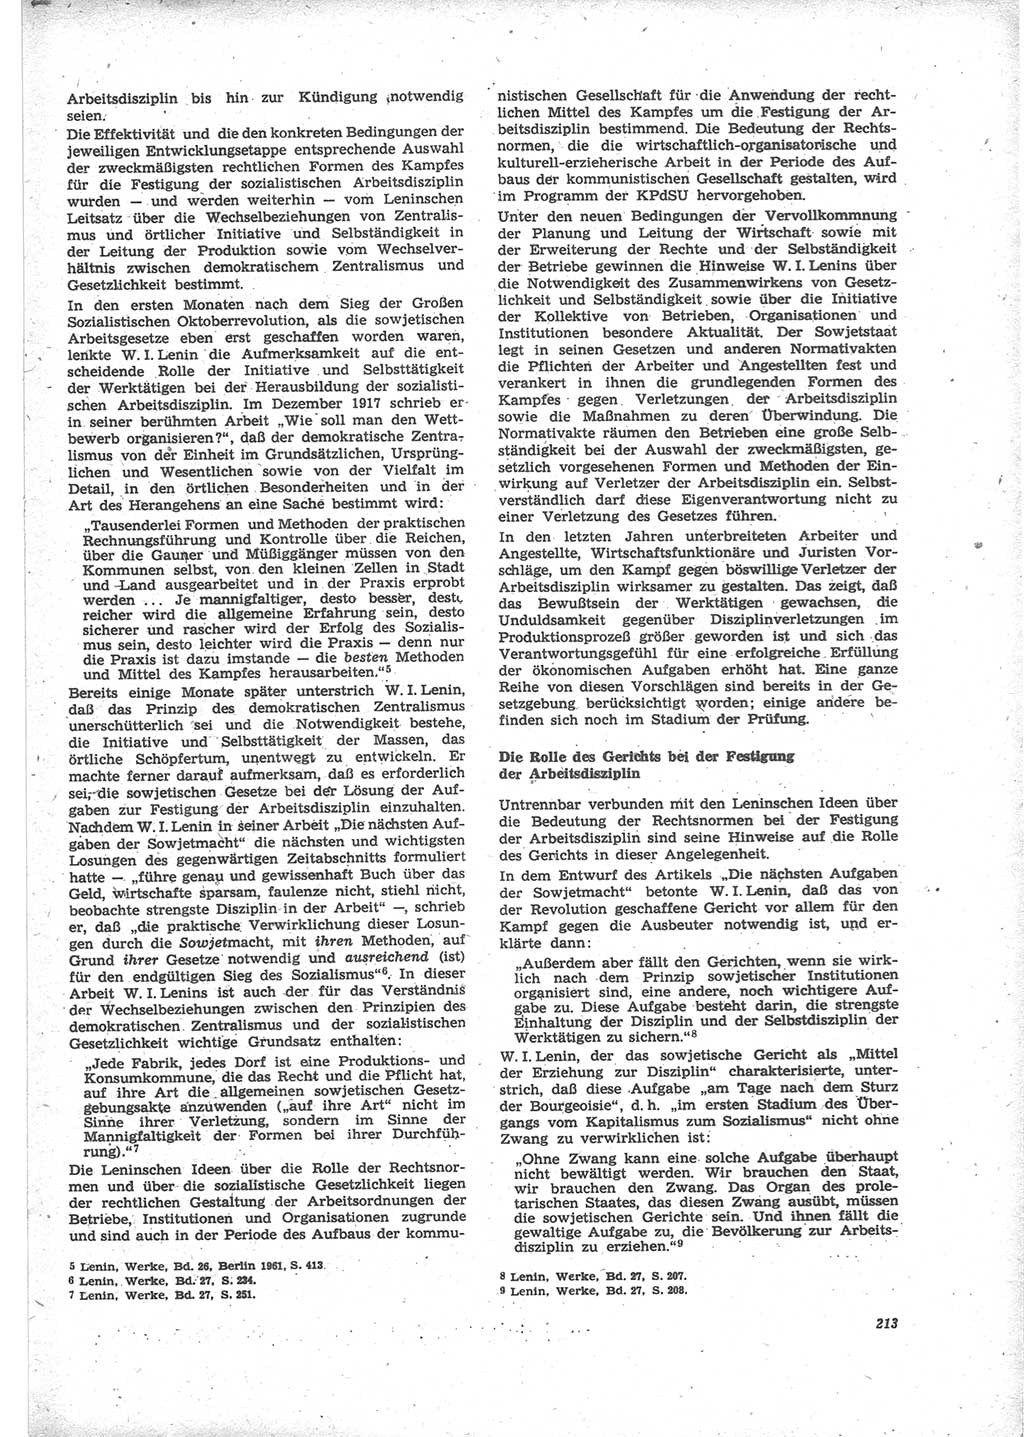 Neue Justiz (NJ), Zeitschrift für Recht und Rechtswissenschaft [Deutsche Demokratische Republik (DDR)], 24. Jahrgang 1970, Seite 213 (NJ DDR 1970, S. 213)